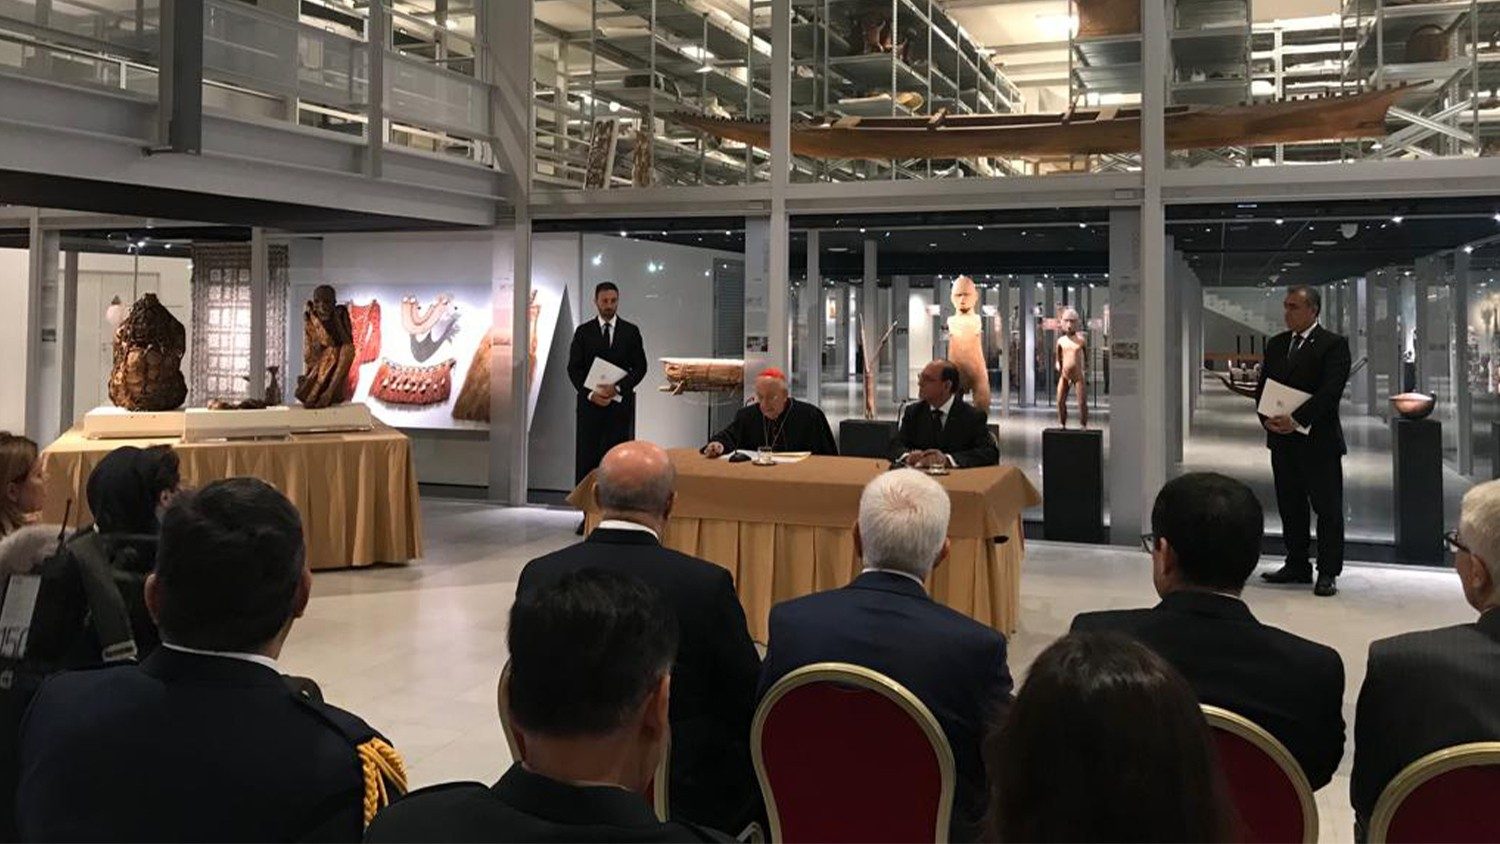 Три мумии из Ватиканских музеев вернулись в Перу